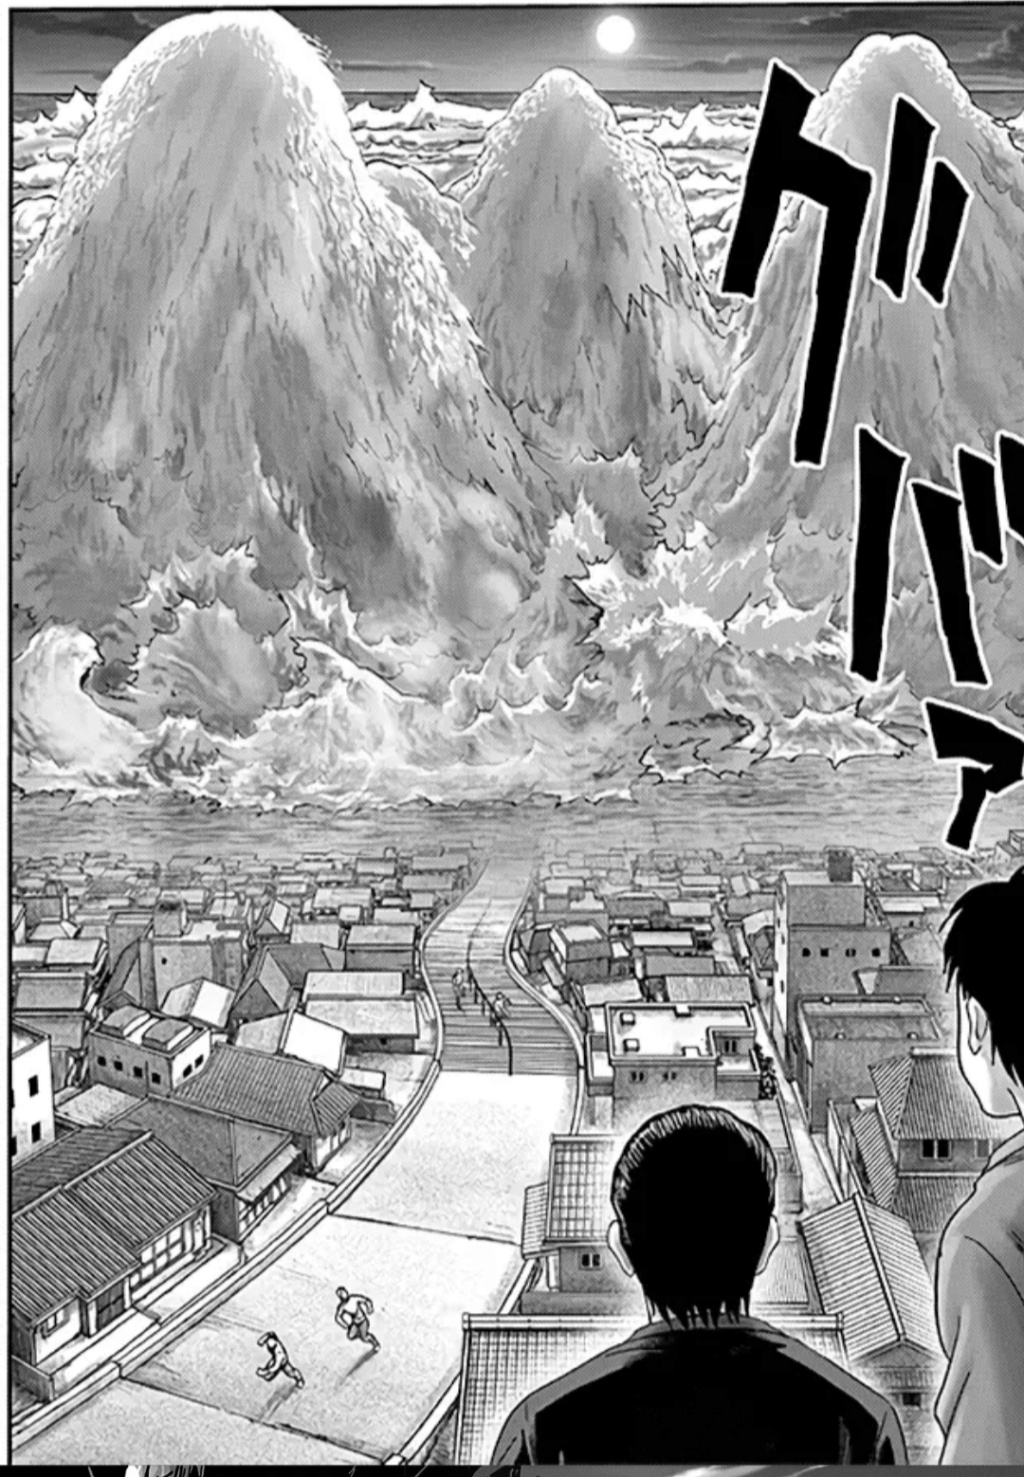 Quem no universo de Naruto seria capaz de derrotar Tatsumaki? - Página 3 Img_2066